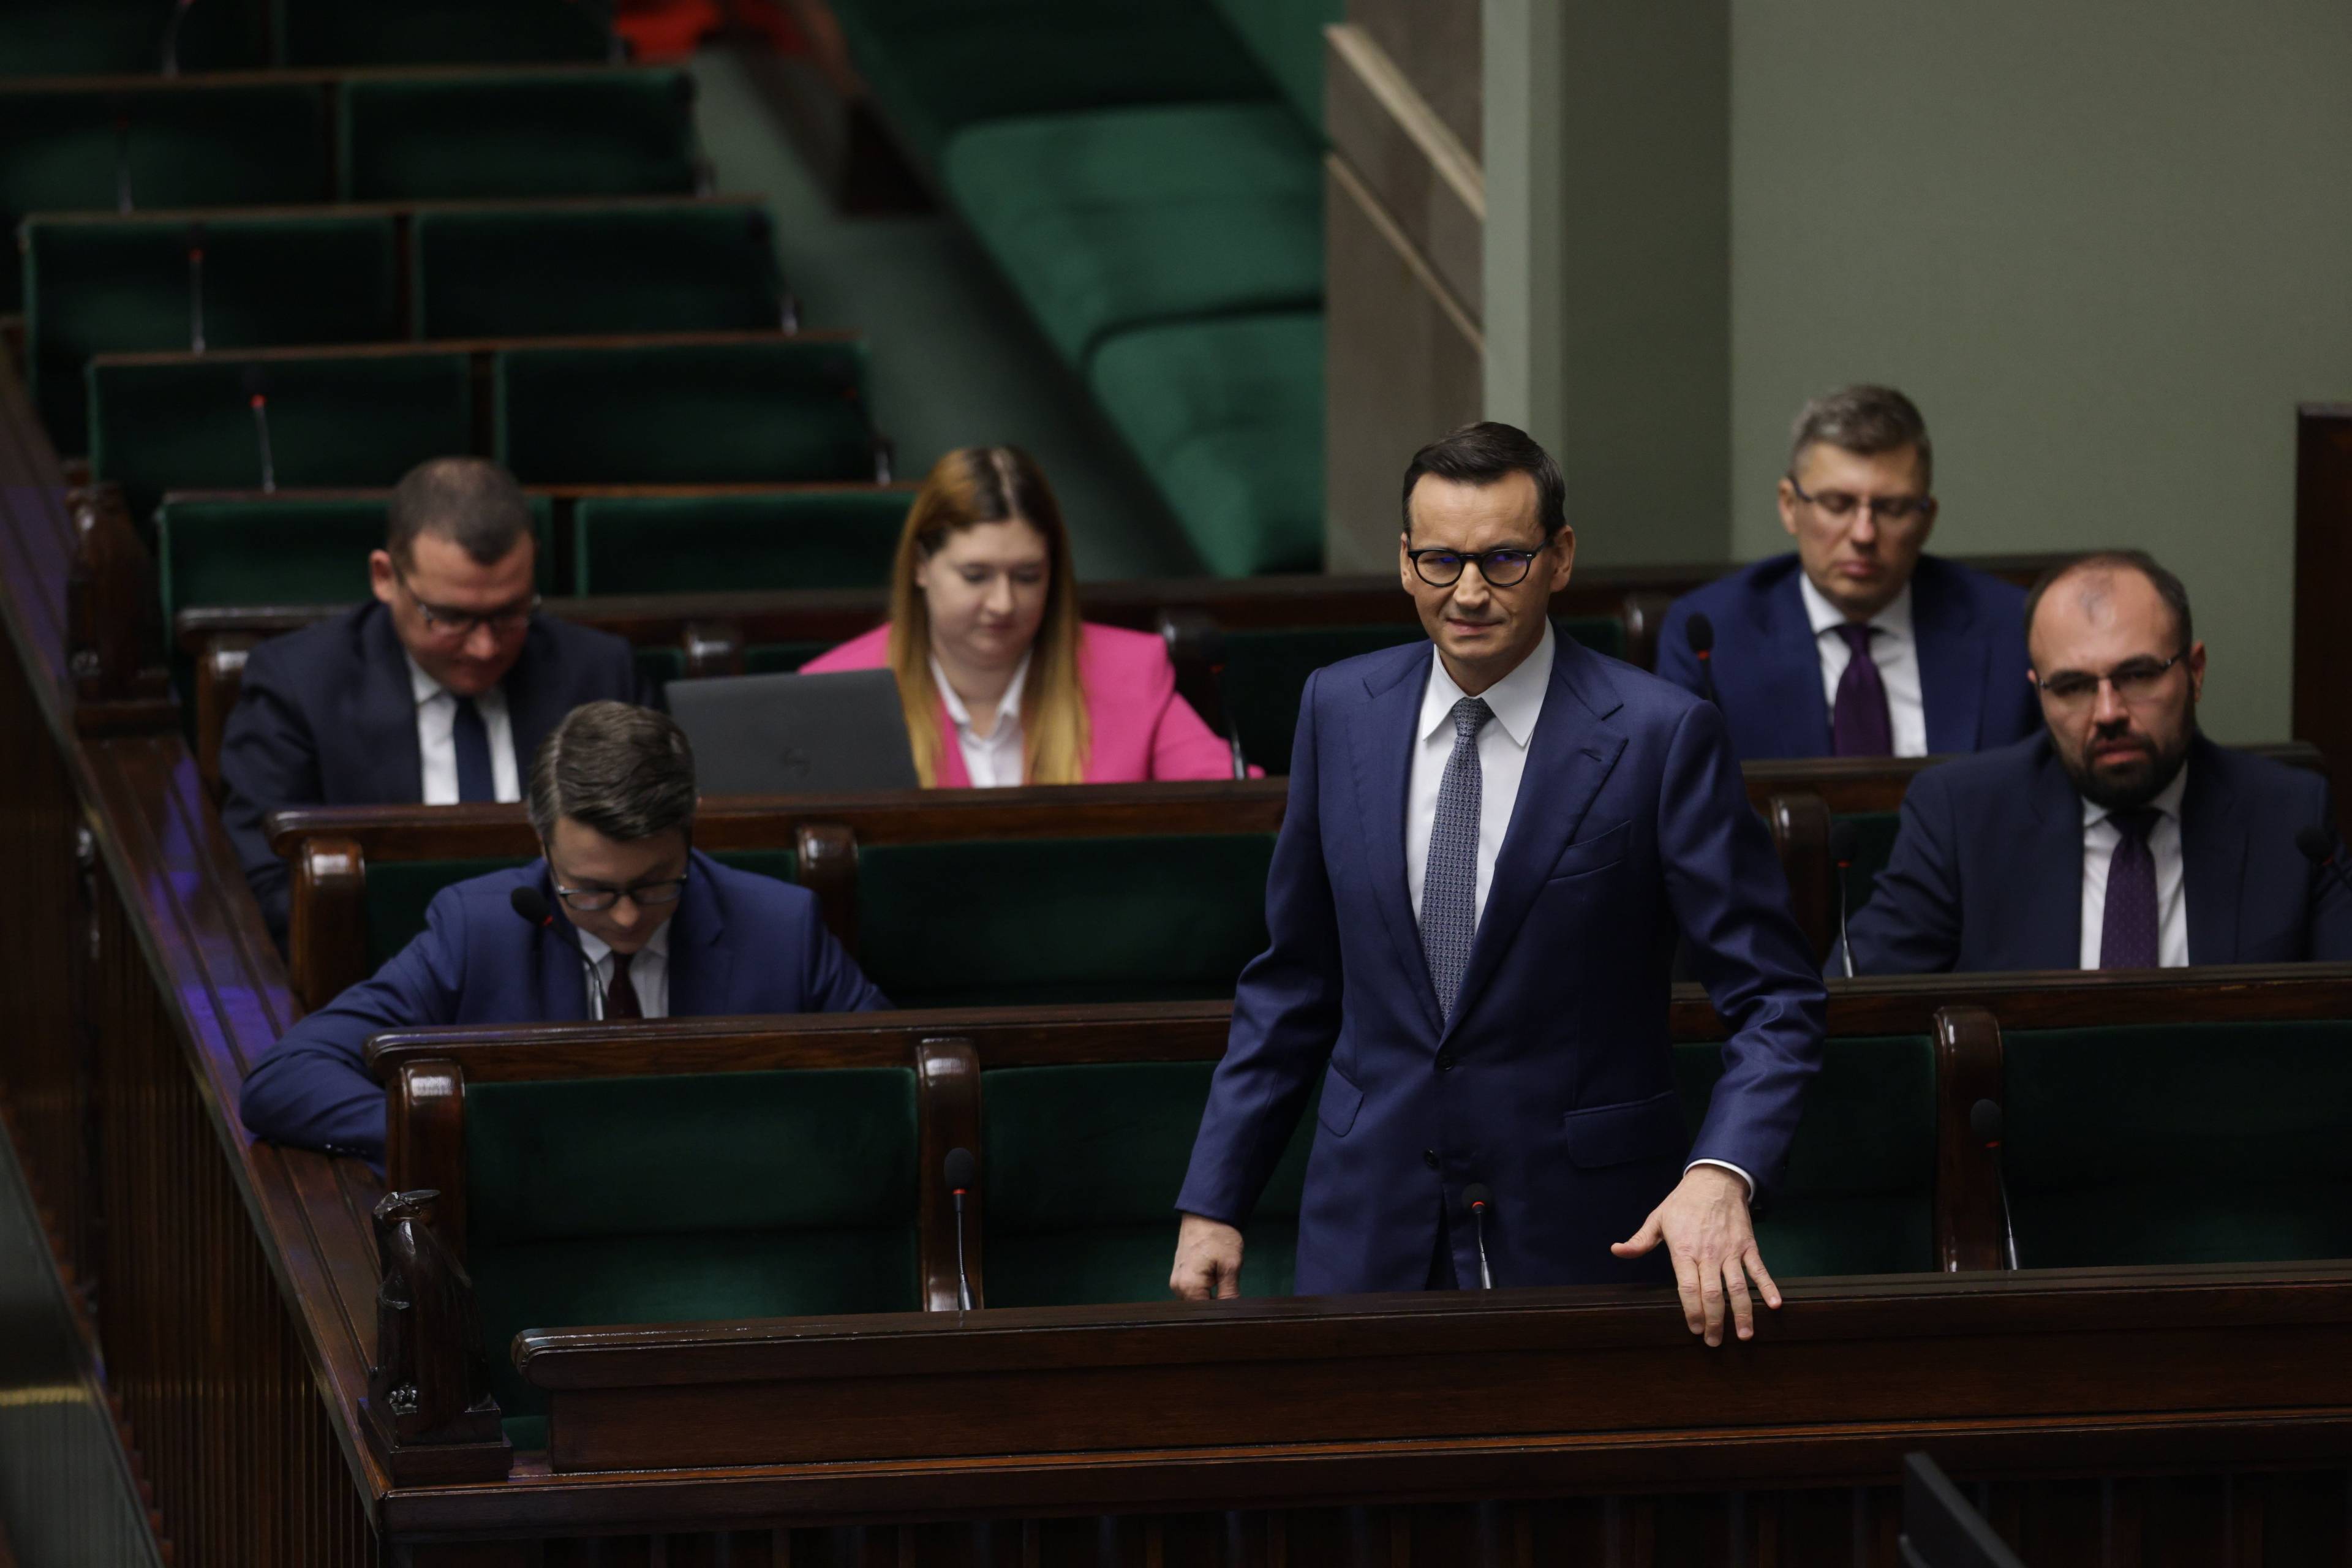 Mateusz Morawiecki stoi w ławach rządowych na sali plenarnej Sejmu. Za nim pozostali członkowie rządu